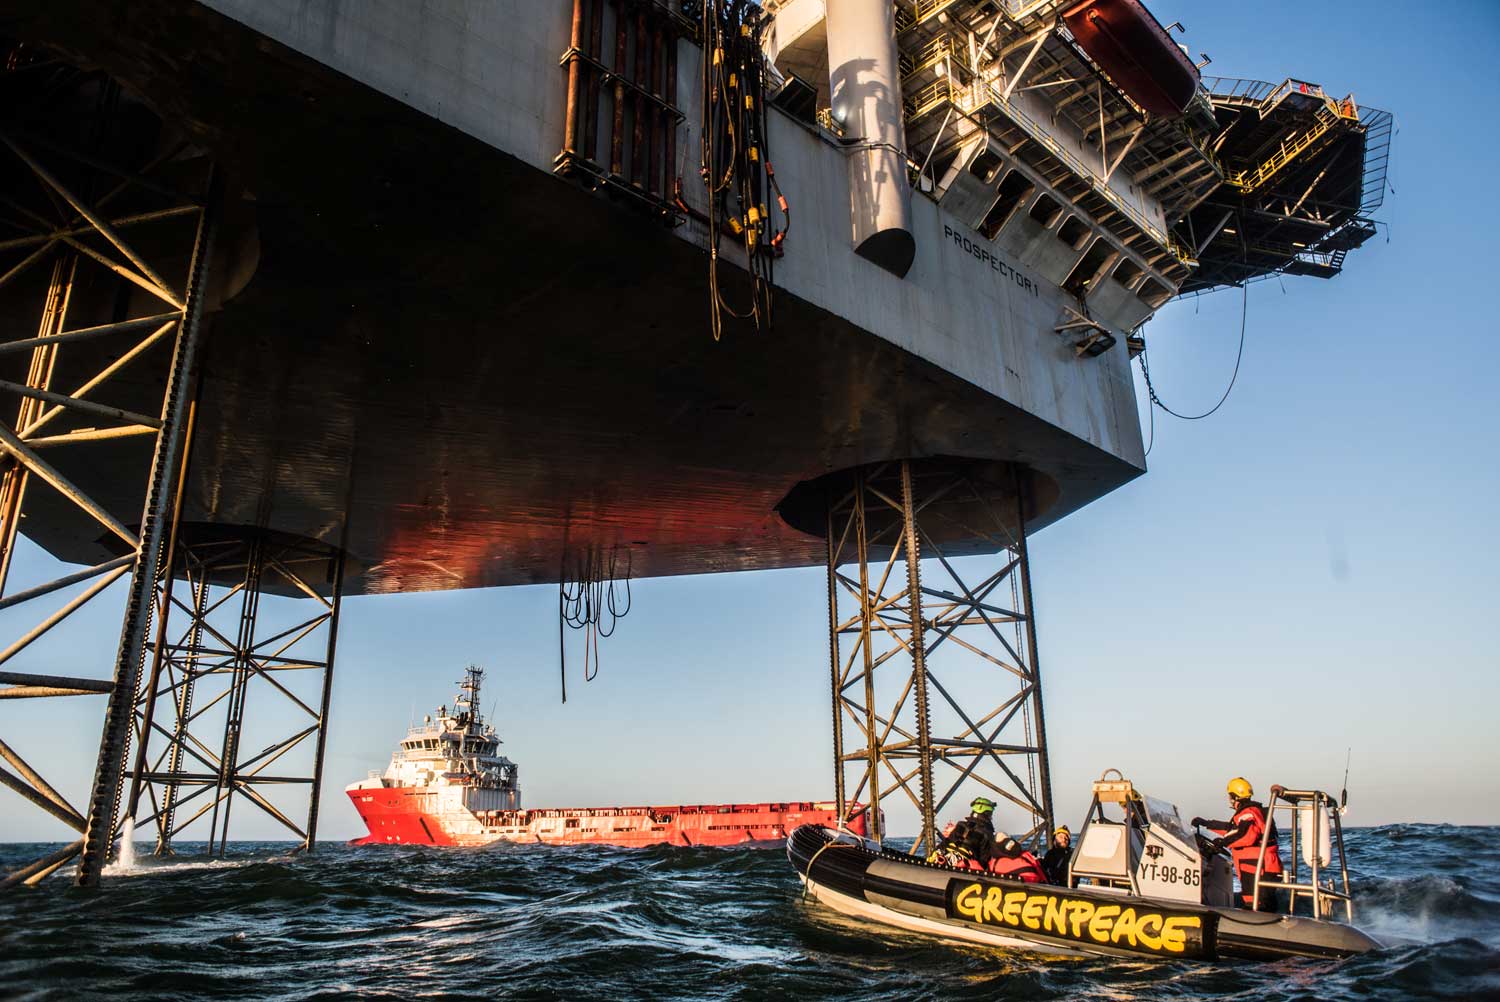 Actievoerders Greenpeace beklimmen gasboorplatform Schiermonnikoog